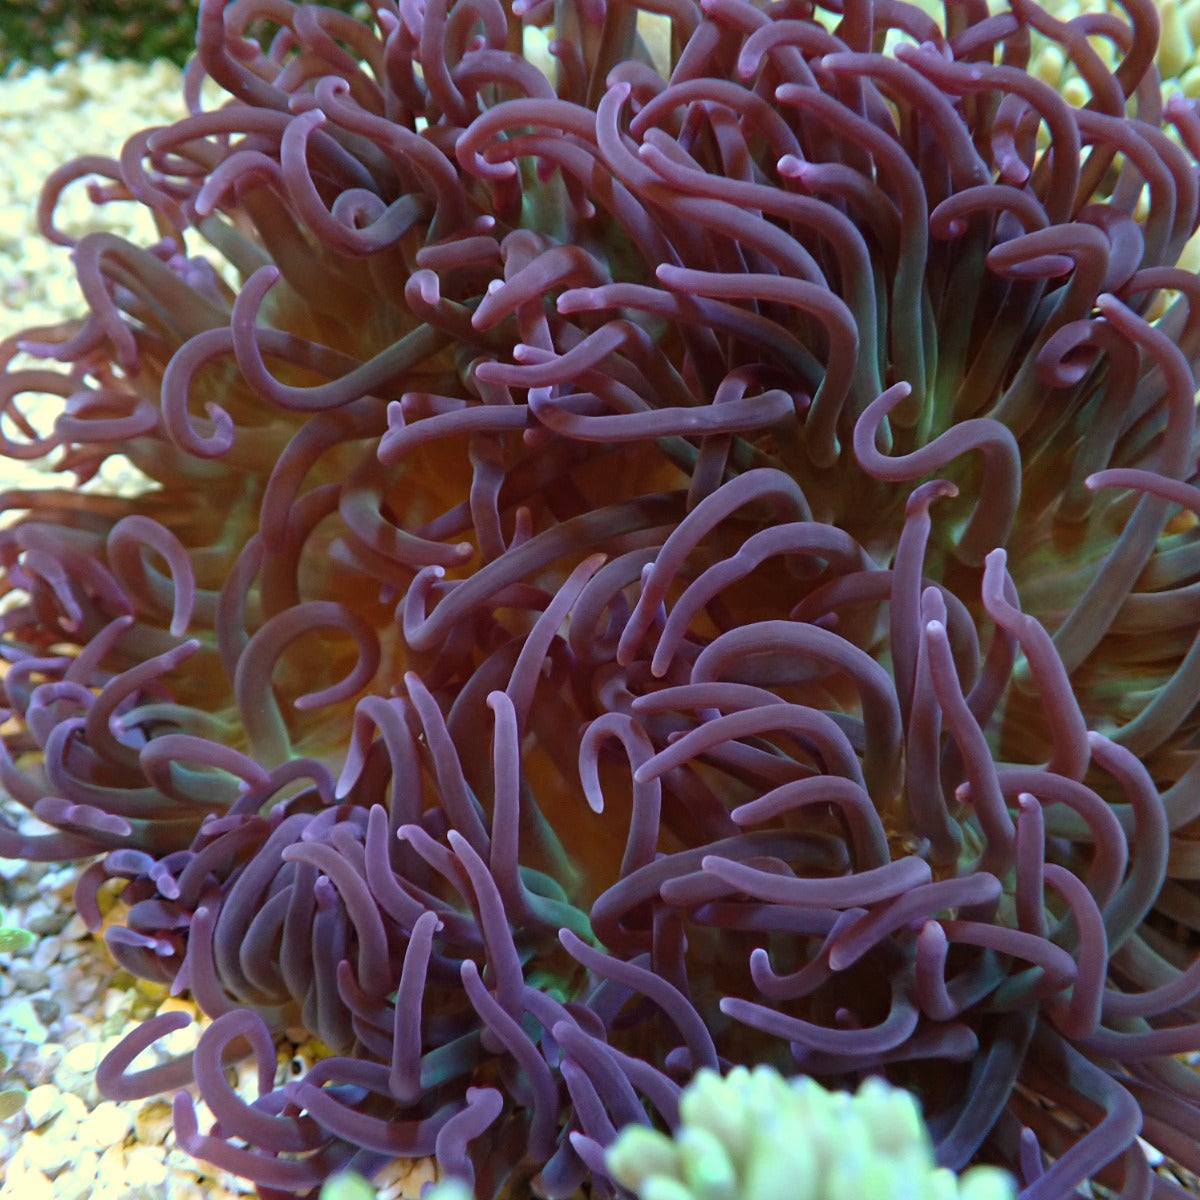 Macrodactyla doreensis (Paars) - Long Tentacle anemone (Paars)